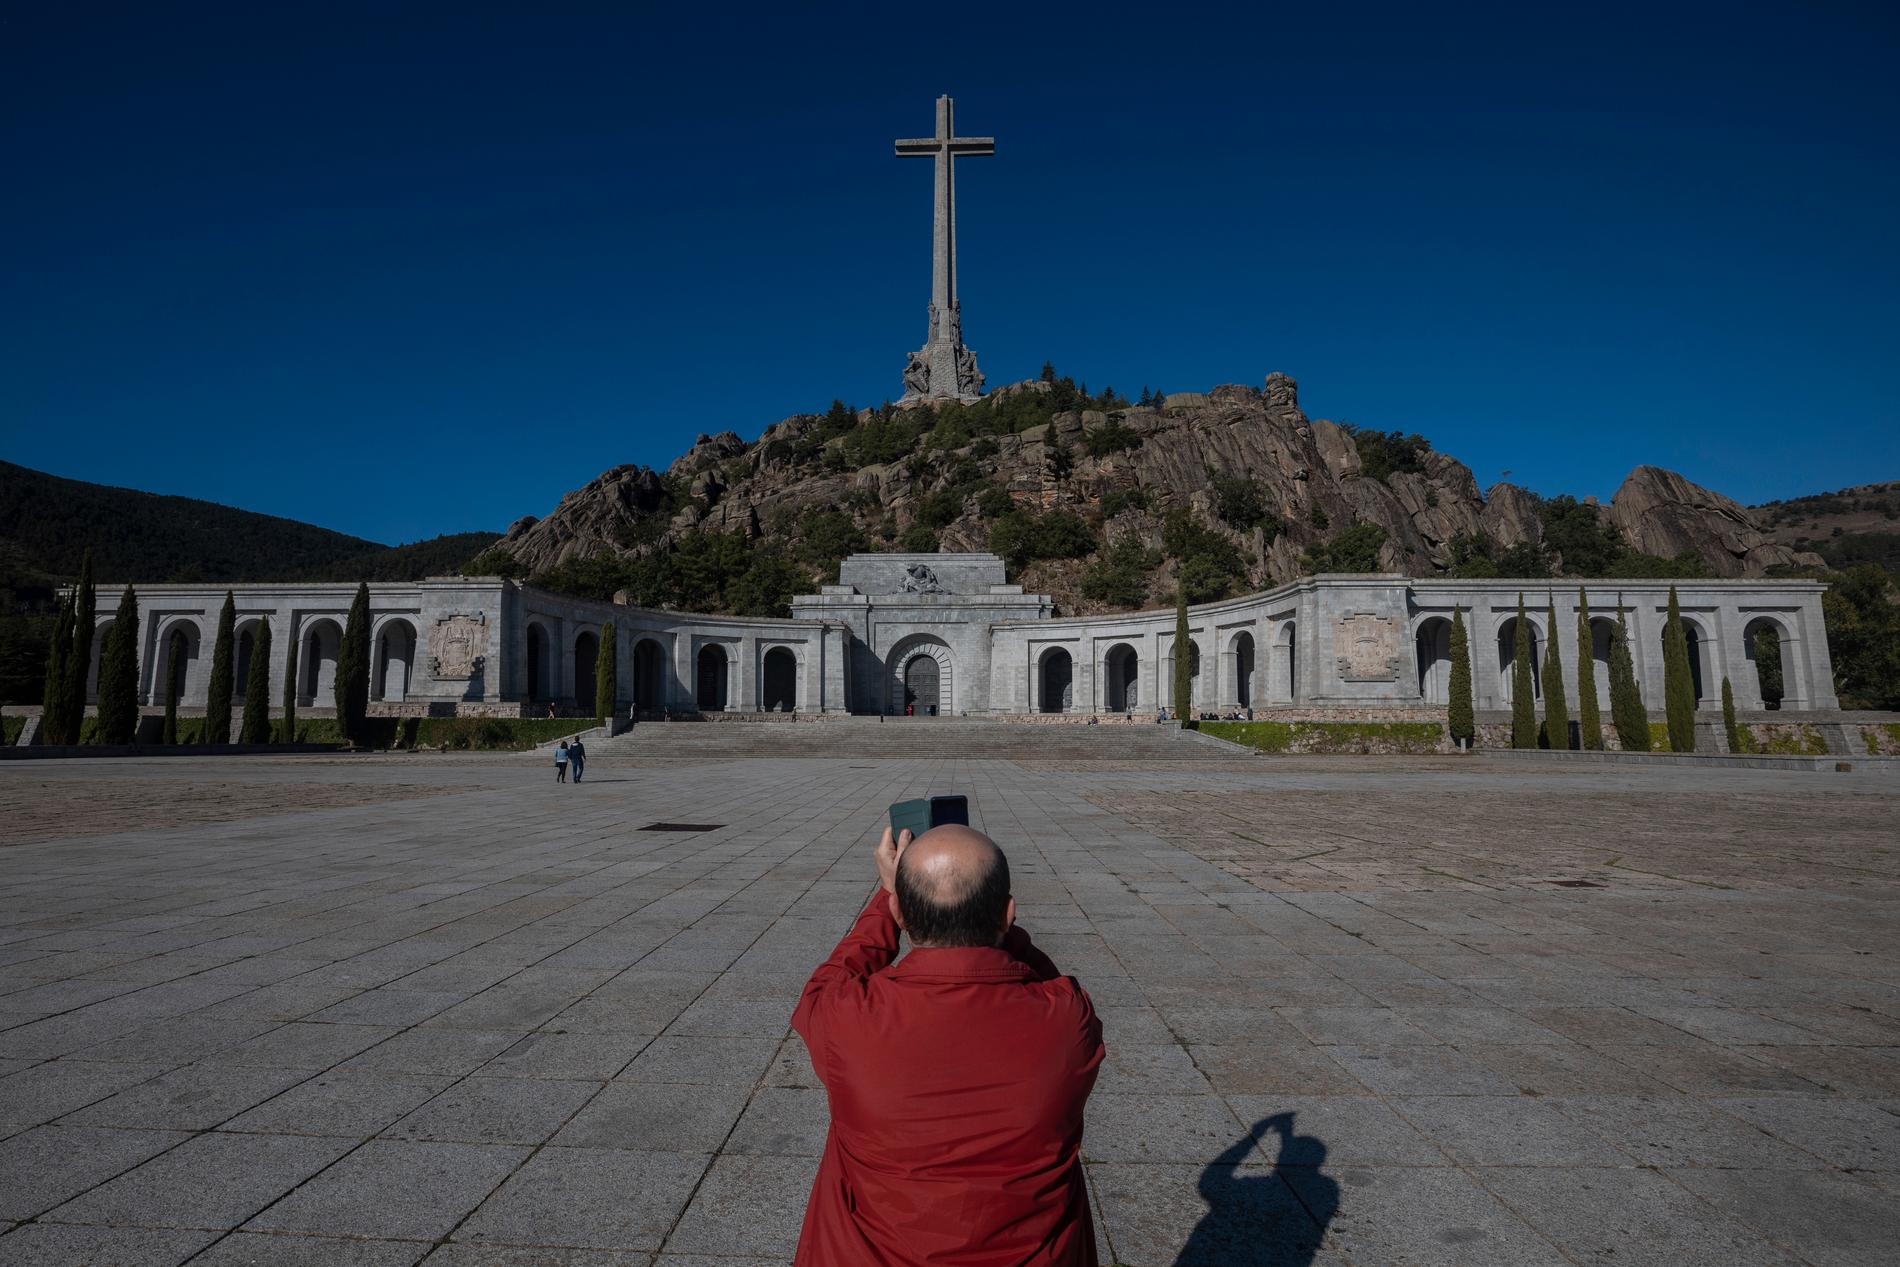 Det är dags för diktatorn Francisco Franco att byta viloplats. Han placerades i mausoleet i Valle de los Caídos (De stupades dal) efter sin död 1975. Nu väntar en familjegrav utanför Madrid. Kritiker anser att socialistregeringens beslut riskerar att öppna sår i samhället. Arkivbild.